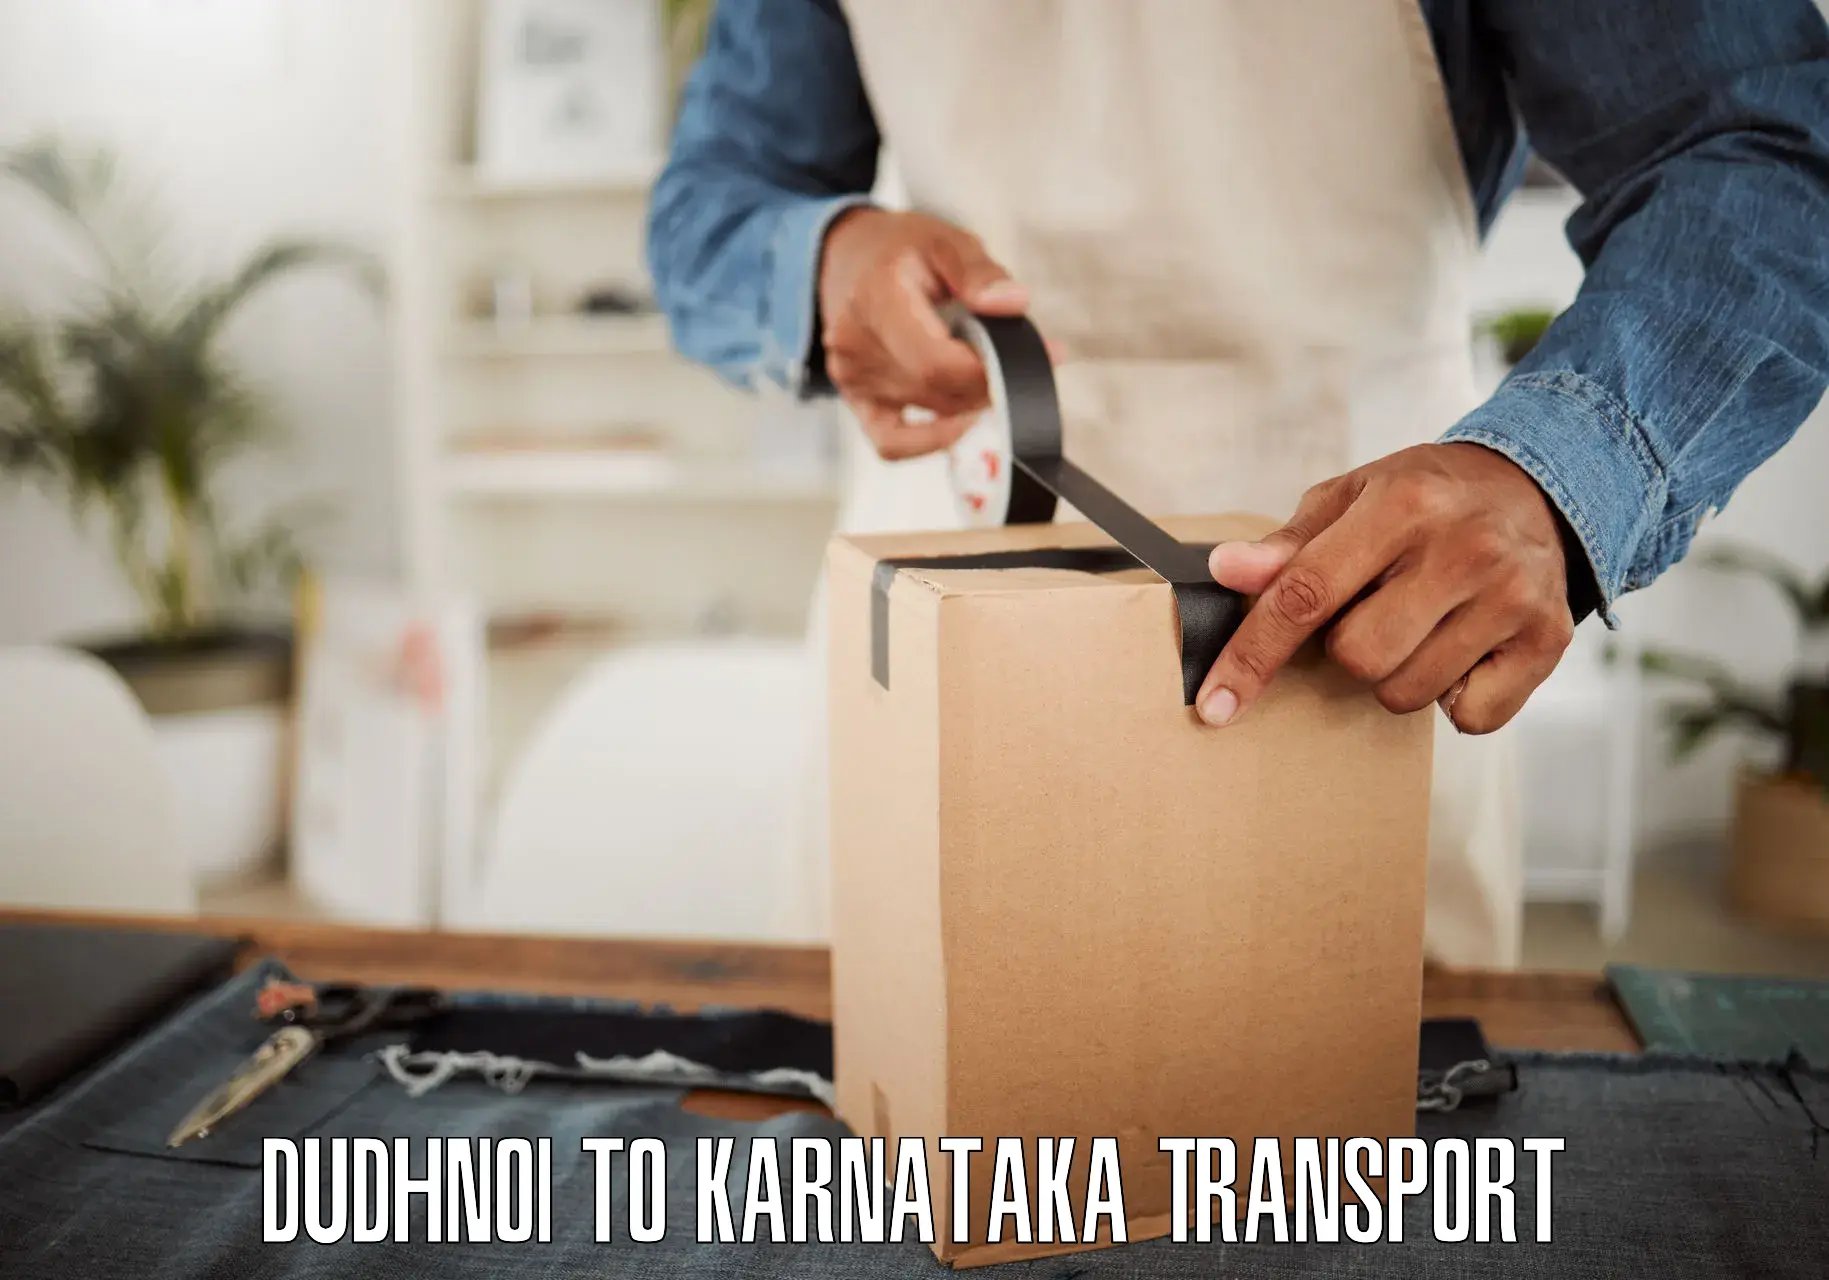 Transport shared services Dudhnoi to Khanapur Karnataka